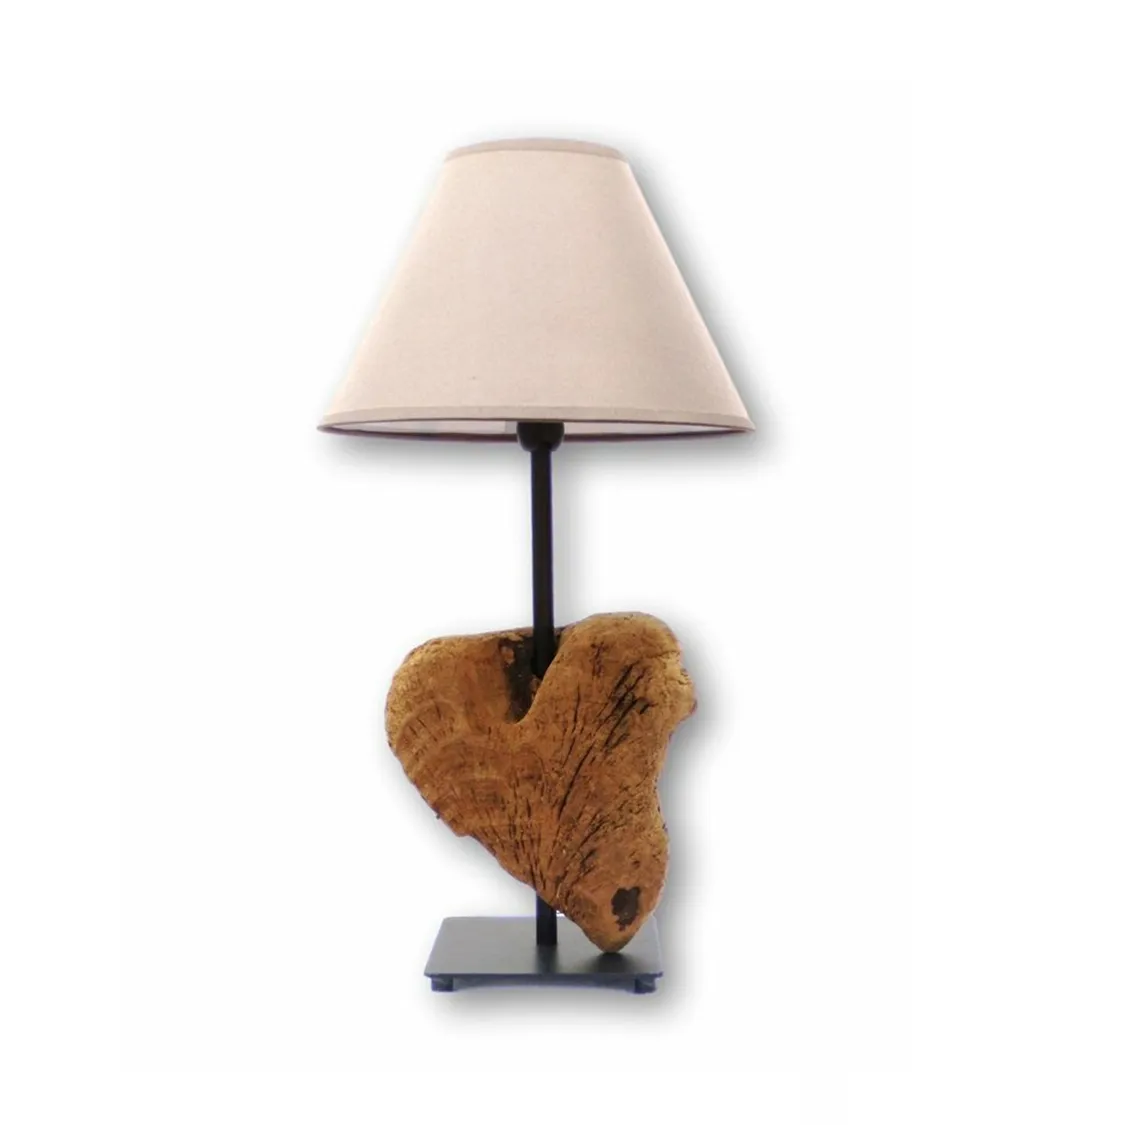 Holztisch lampe Moderne und dekorative Licht lampe für Wohnkultur Hohe Qualität zu einem erschwing lichen Preis erhältlich